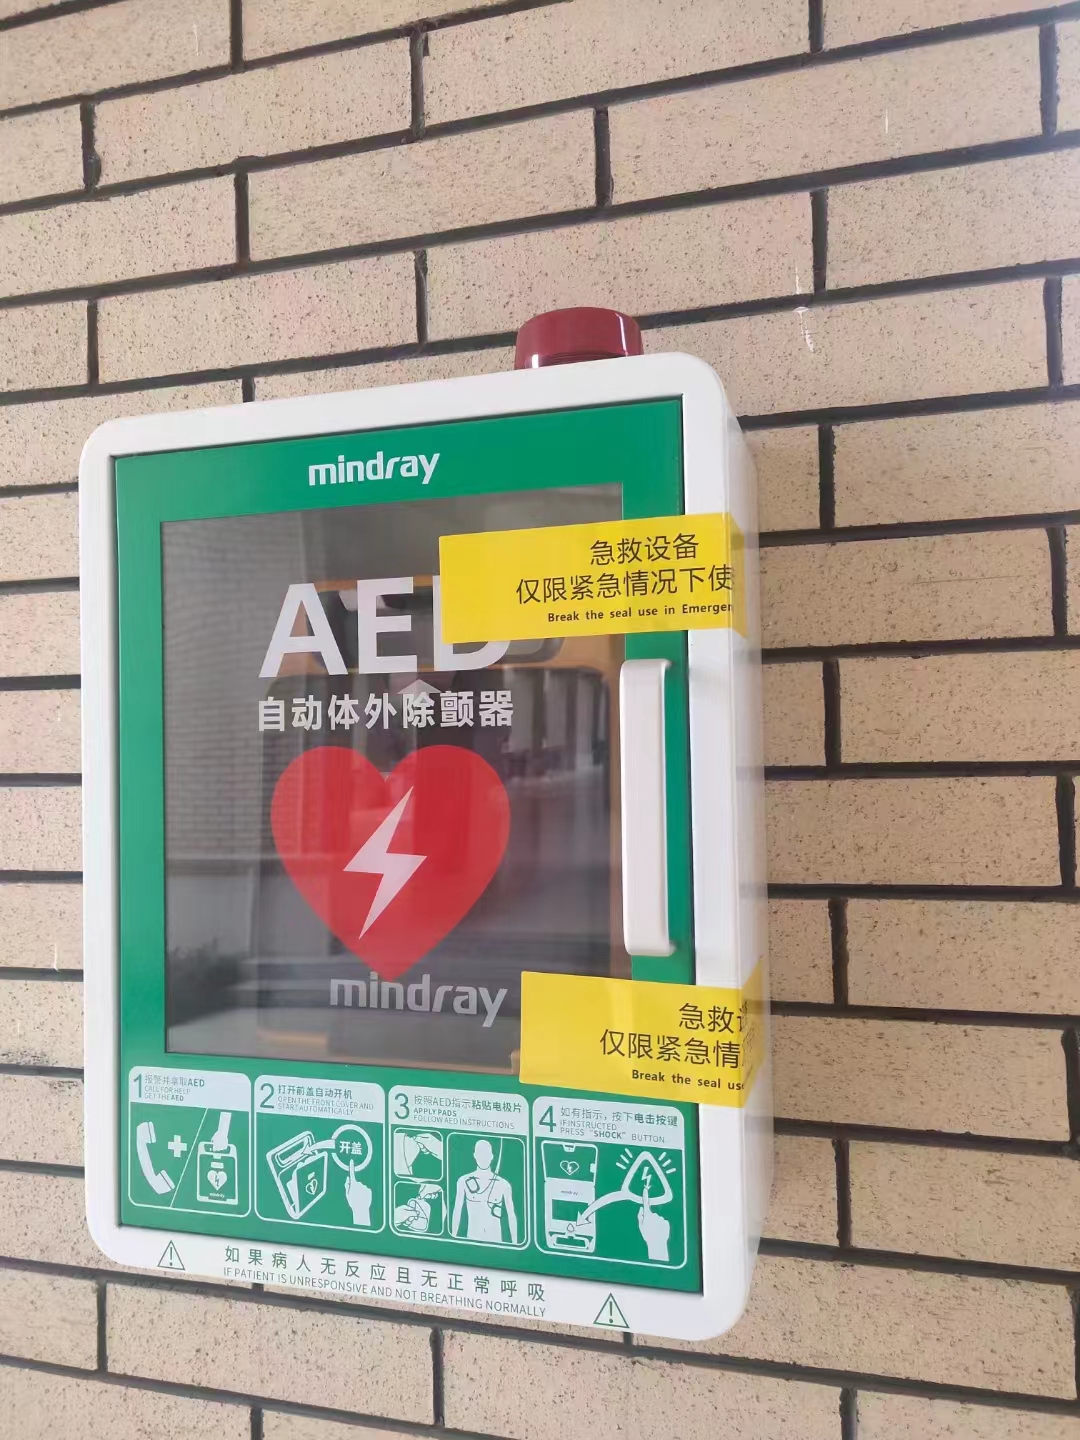 3校园内配置的自动体外除颤器（AED）.jpg